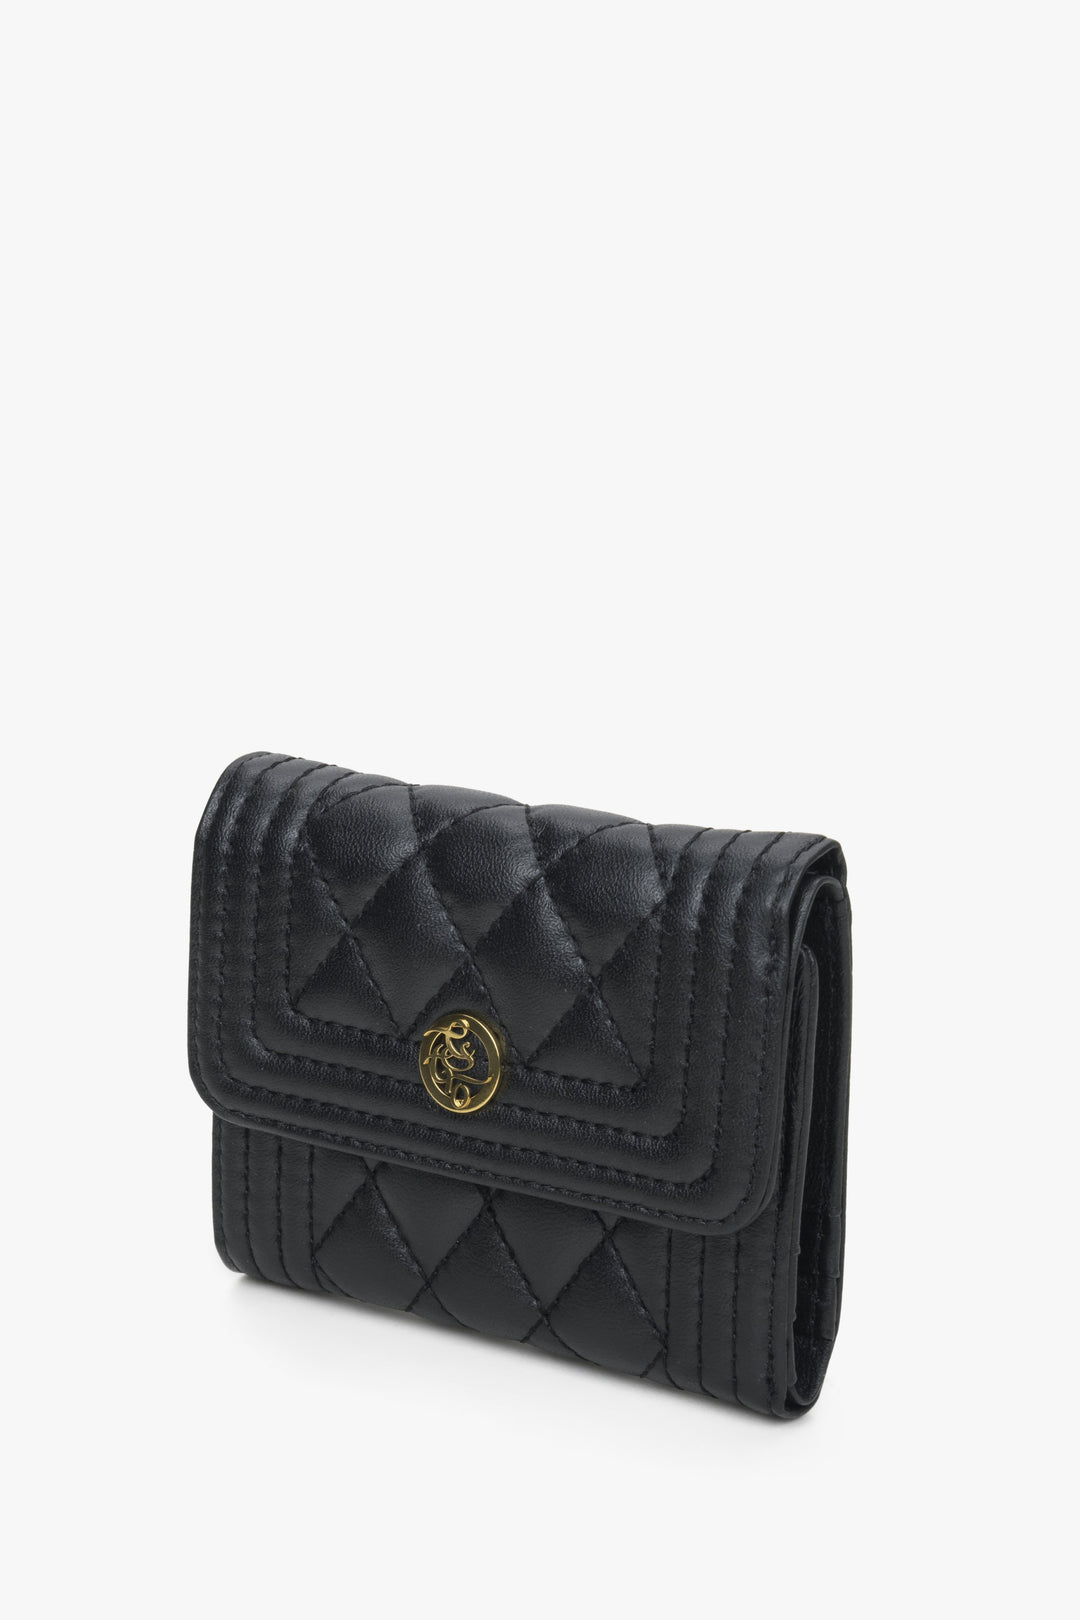 Women's black Estro wallet.